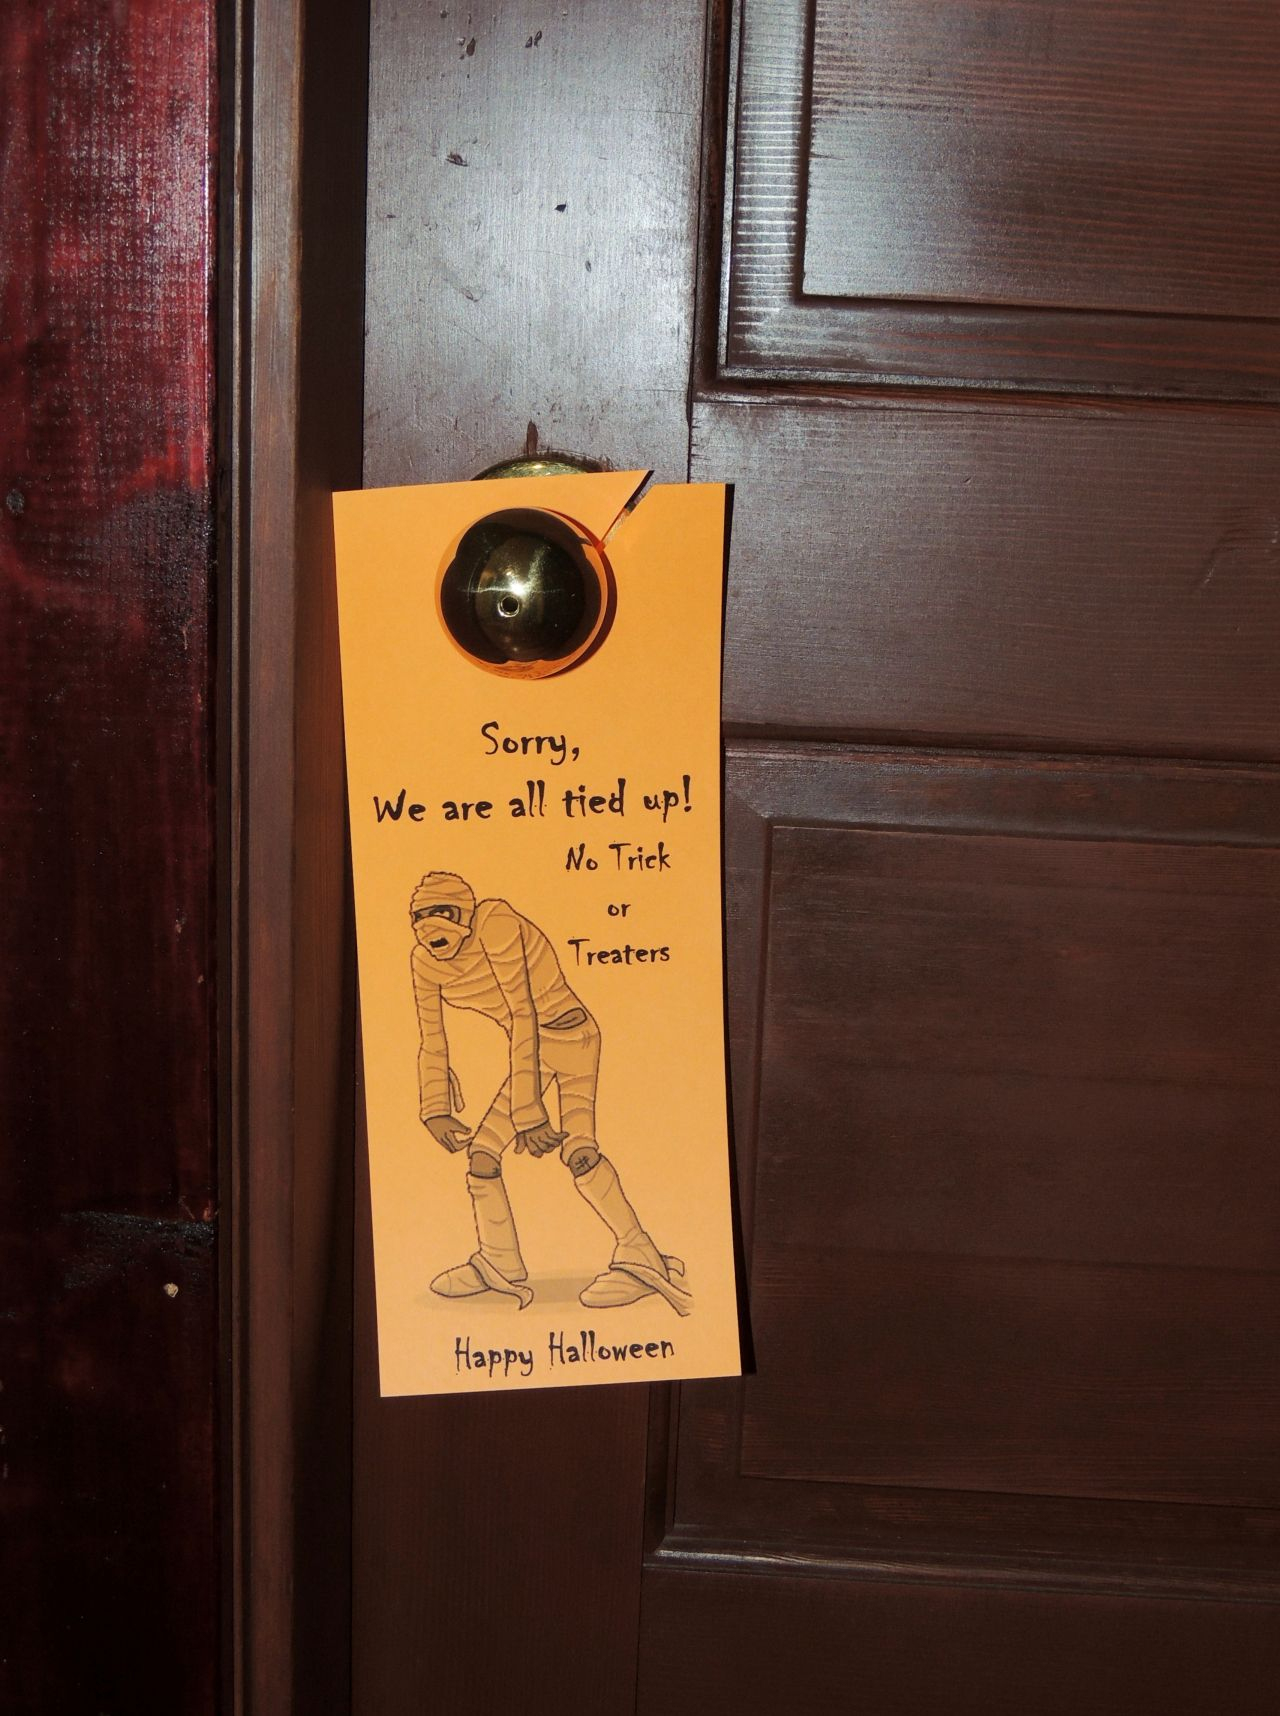 Free Printable Halloween Door Hanger For Your Apartment Community - Halloween Door Hangers Free Printable